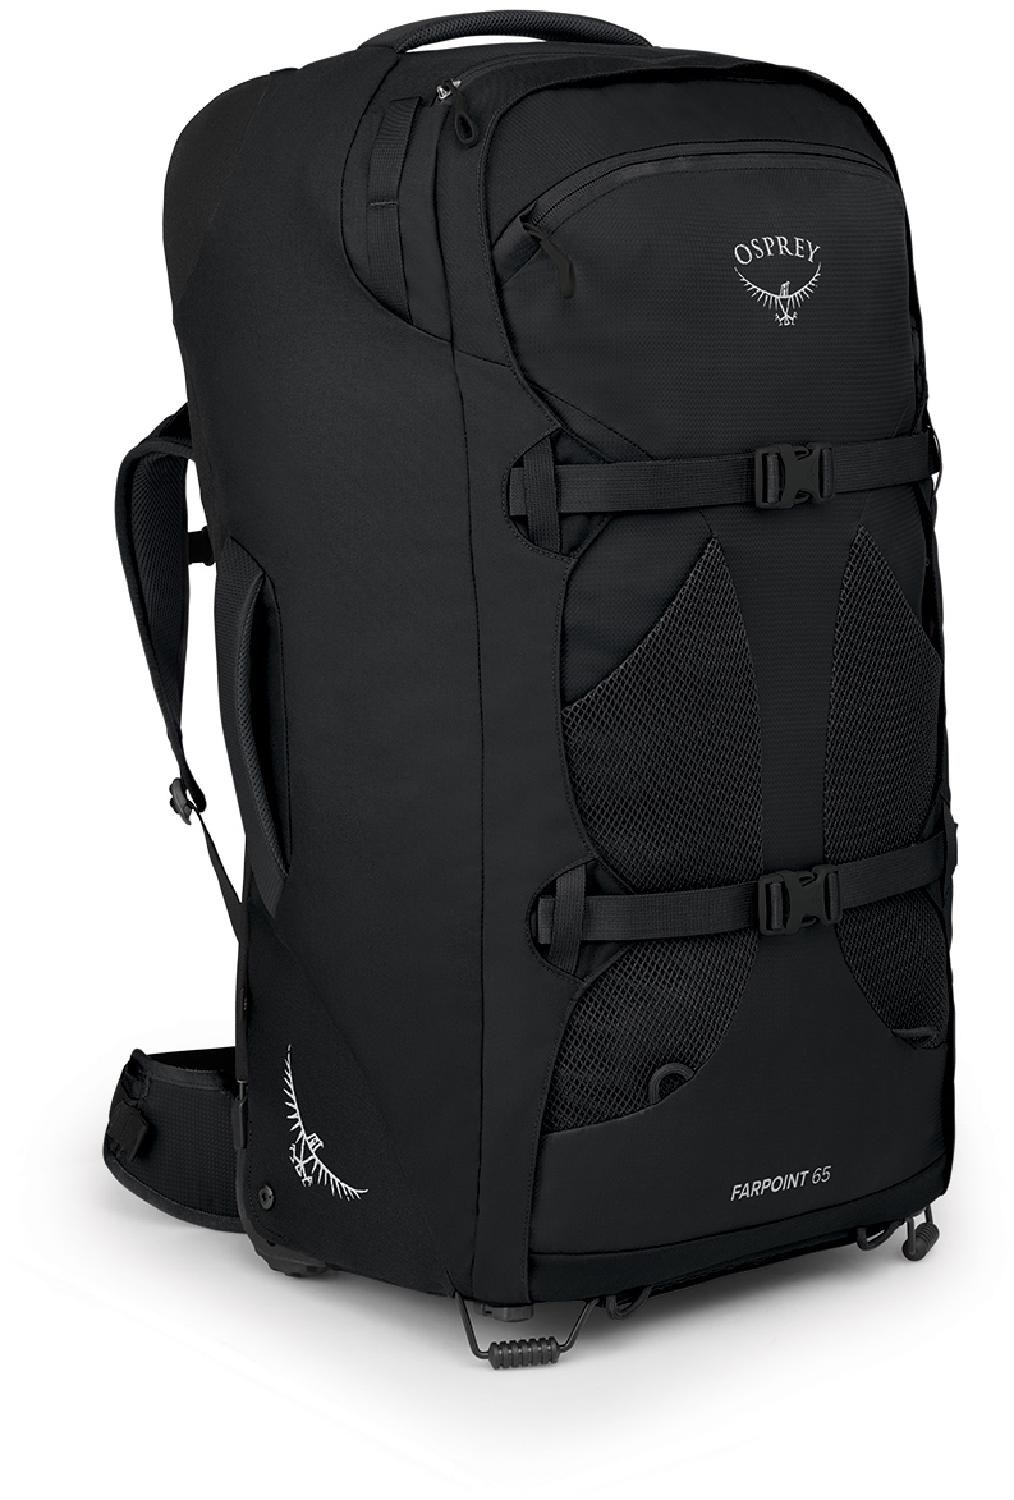 цена Дорожный рюкзак Farpoint 65 на колесиках — мужской Osprey, черный